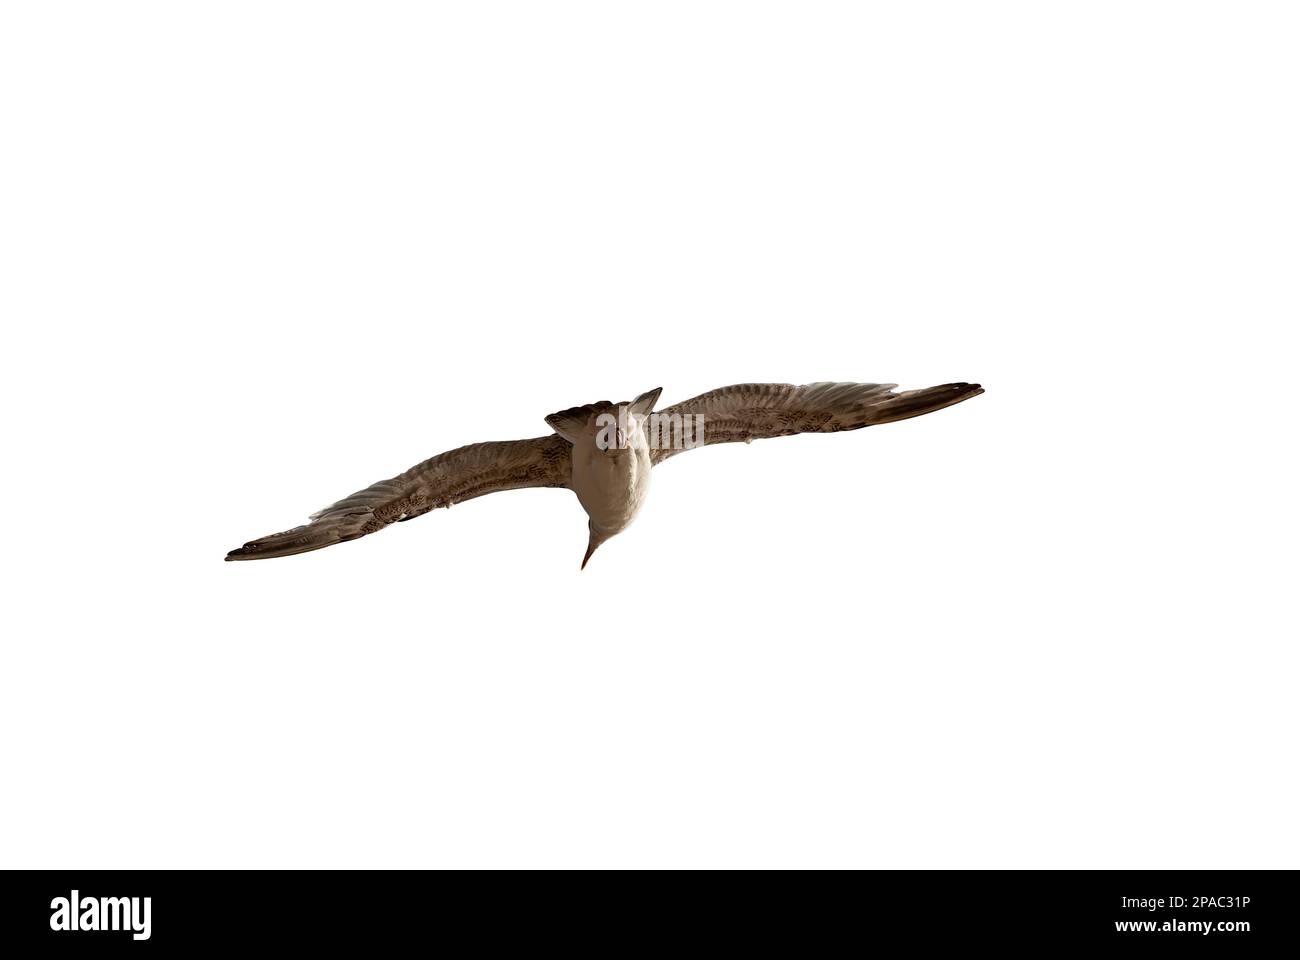 gabbiano volante con ali distese da dietro - gabbiano in volo guarda ai lati - gabbiano in volo isolato su sfondo bianco Foto Stock